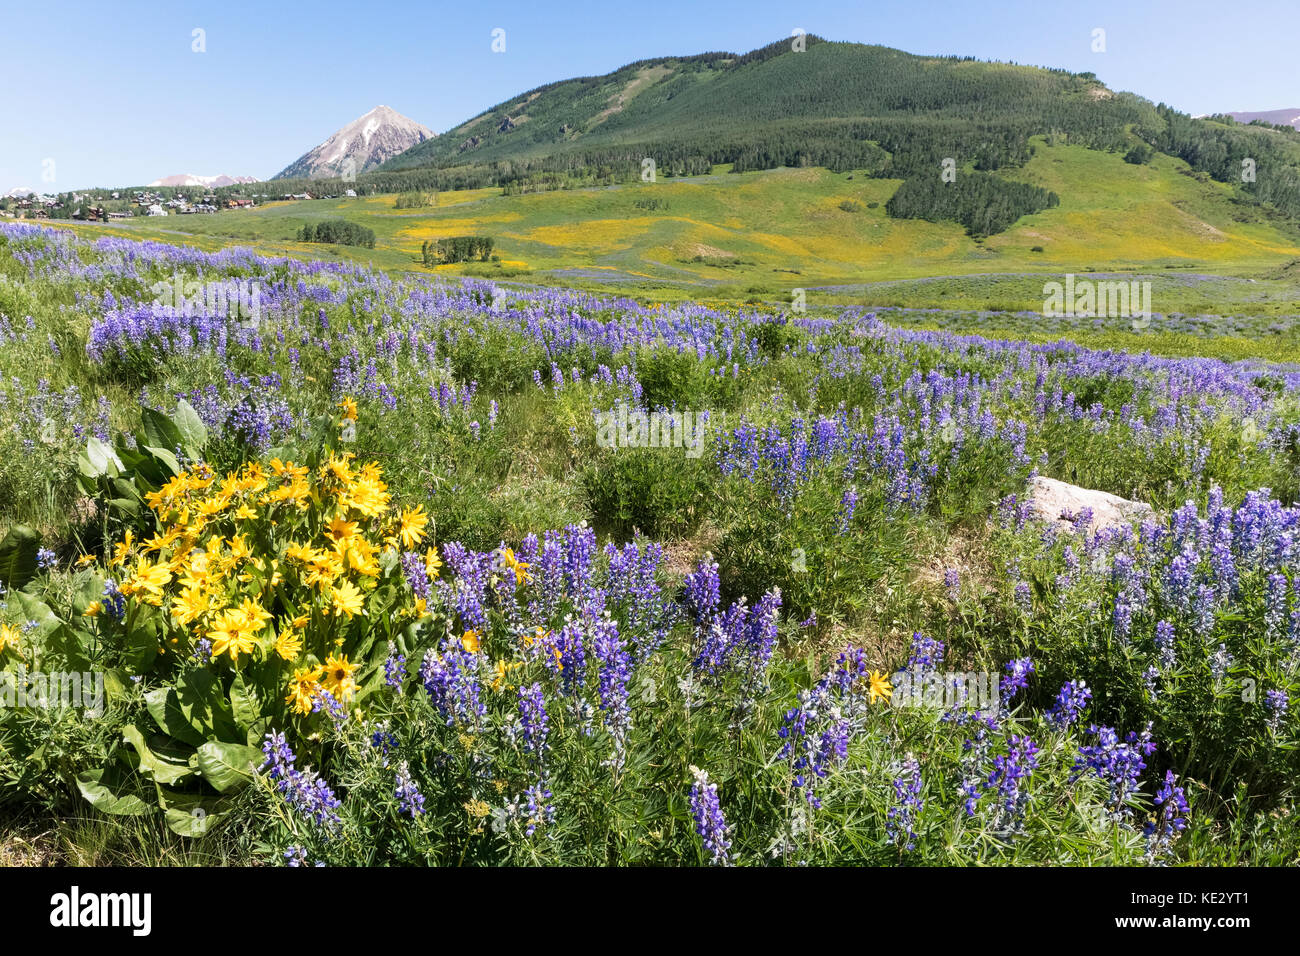 Aspen Sunflowers et Silvery Lupin (Lupinus argenteus) couvre les contreforts des montagnes Rocheuses, Crested Butte, Colorado, États-Unis Banque D'Images